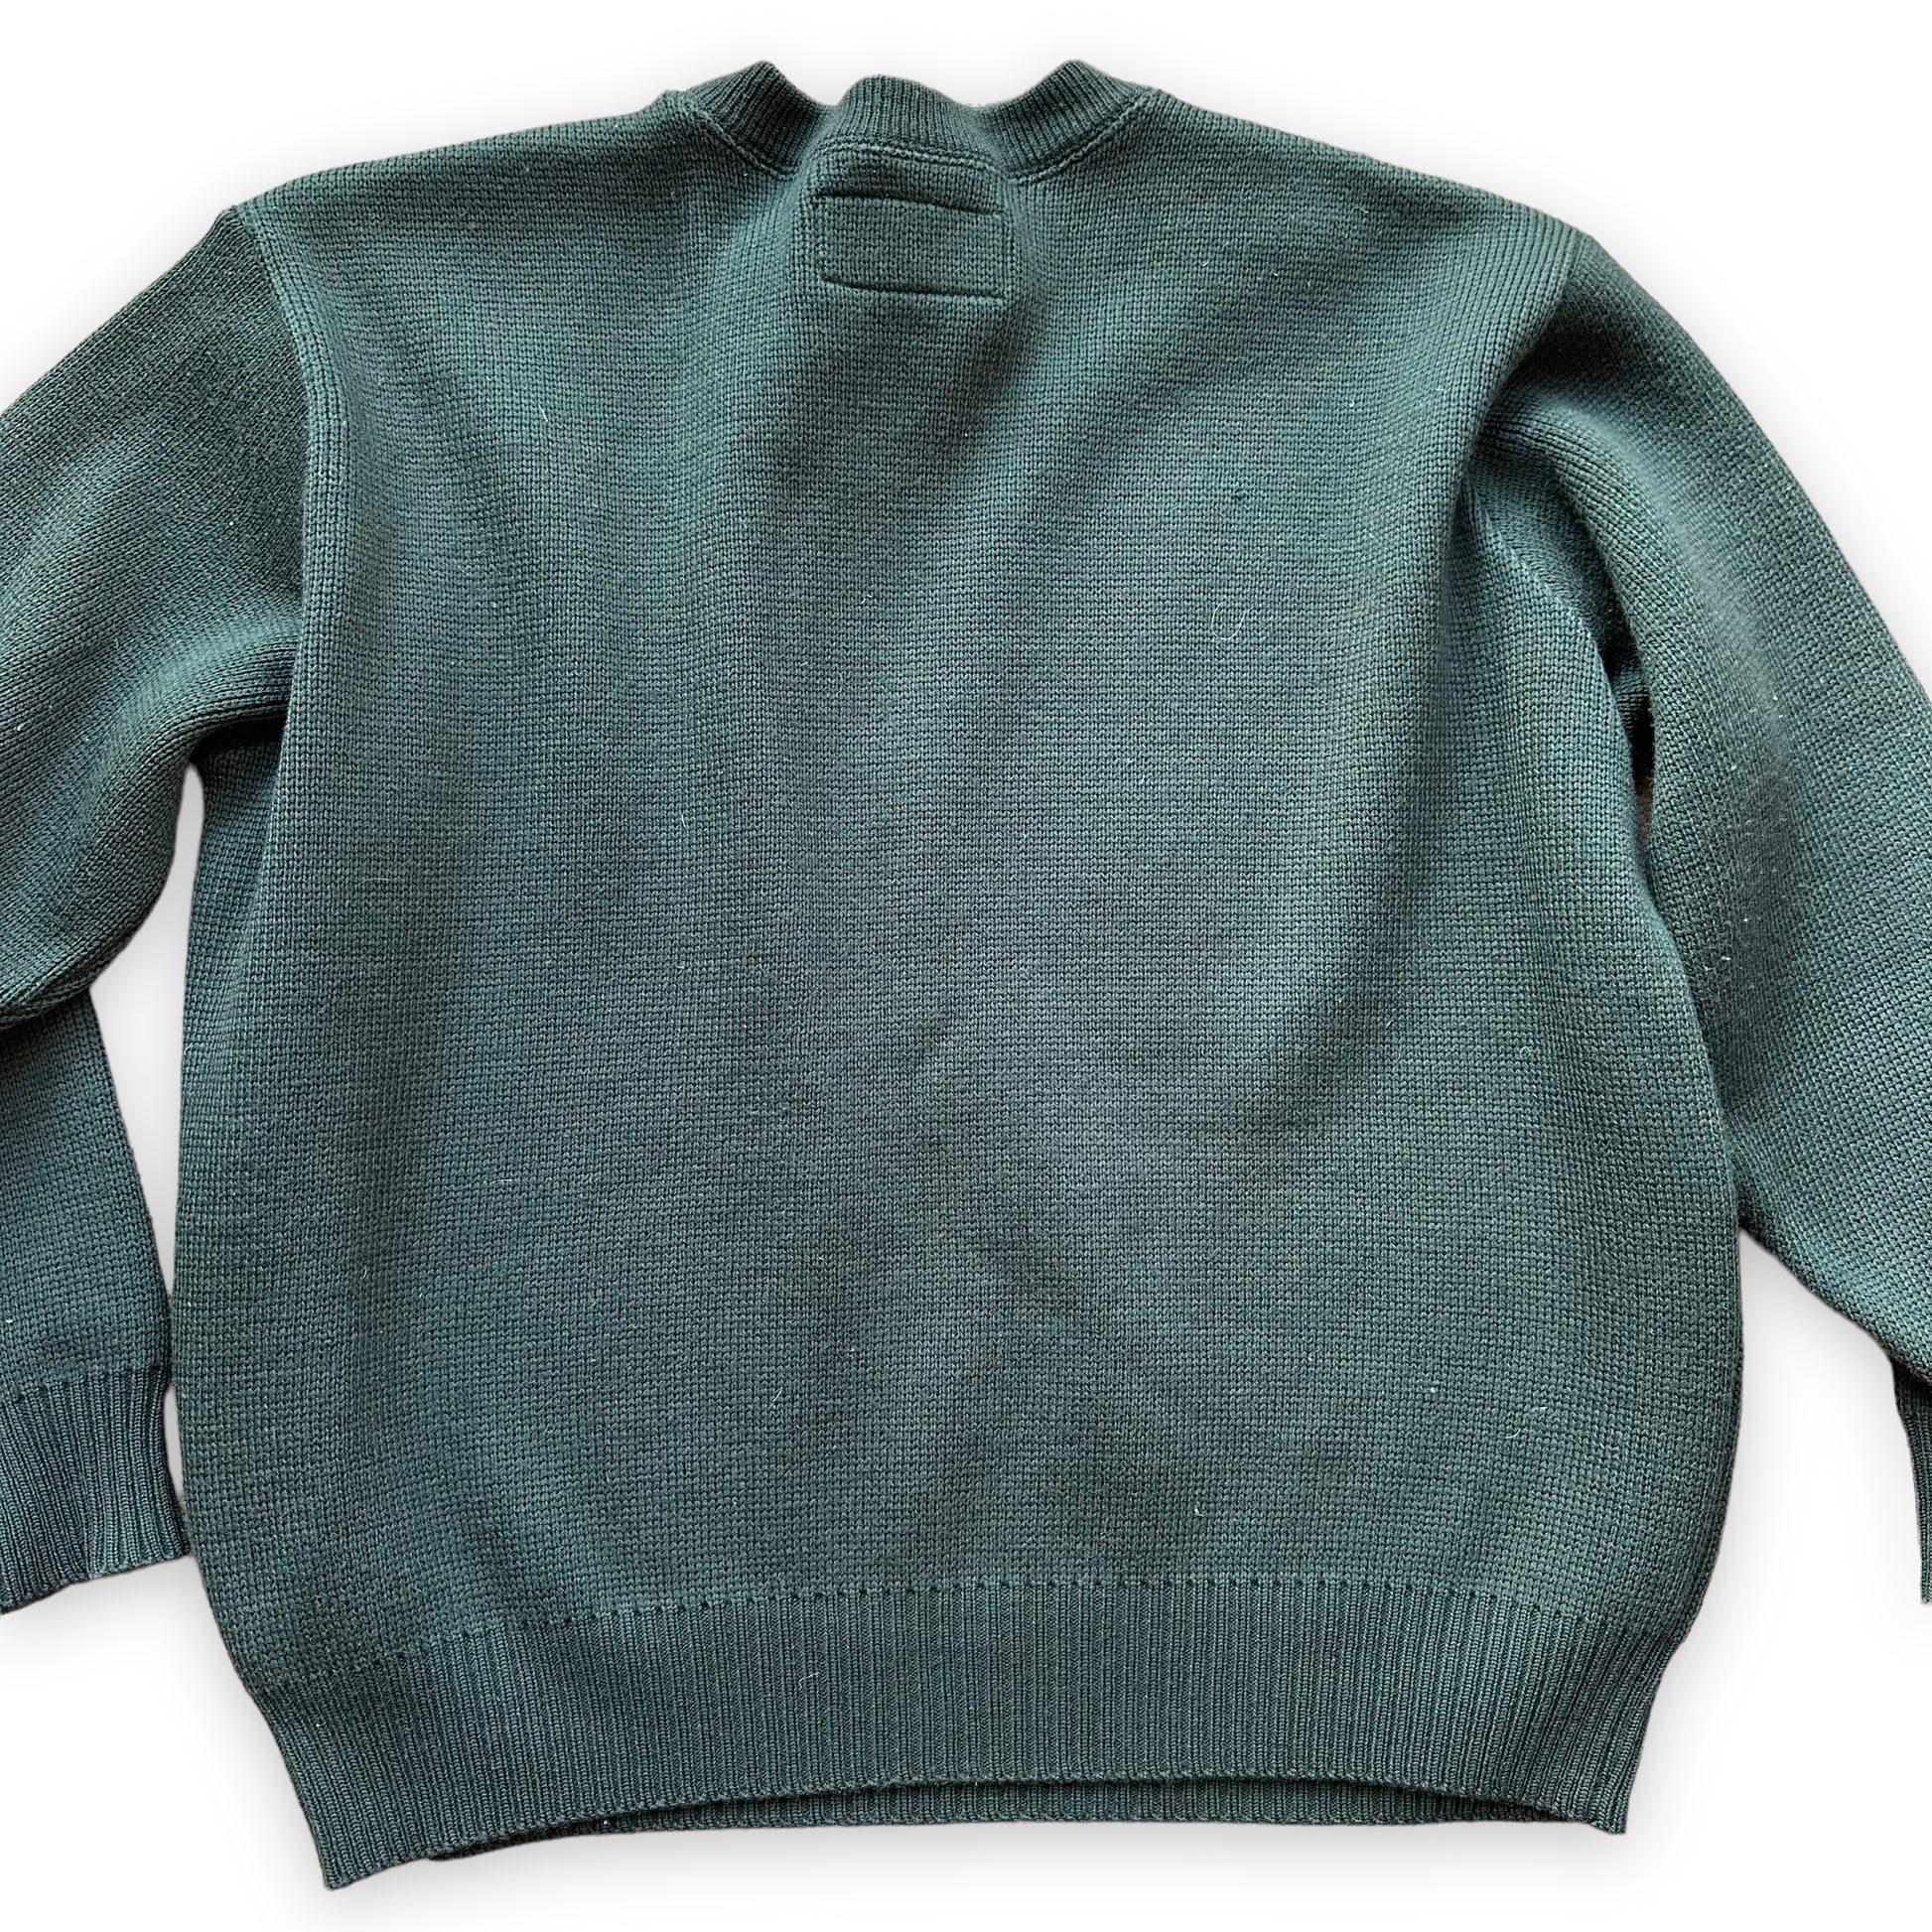 Rear Detail on Filson Guide Sweater SZ L |  Barn Owl Vintage Goods | Vintage Filson Workwear Sweaters Seattle